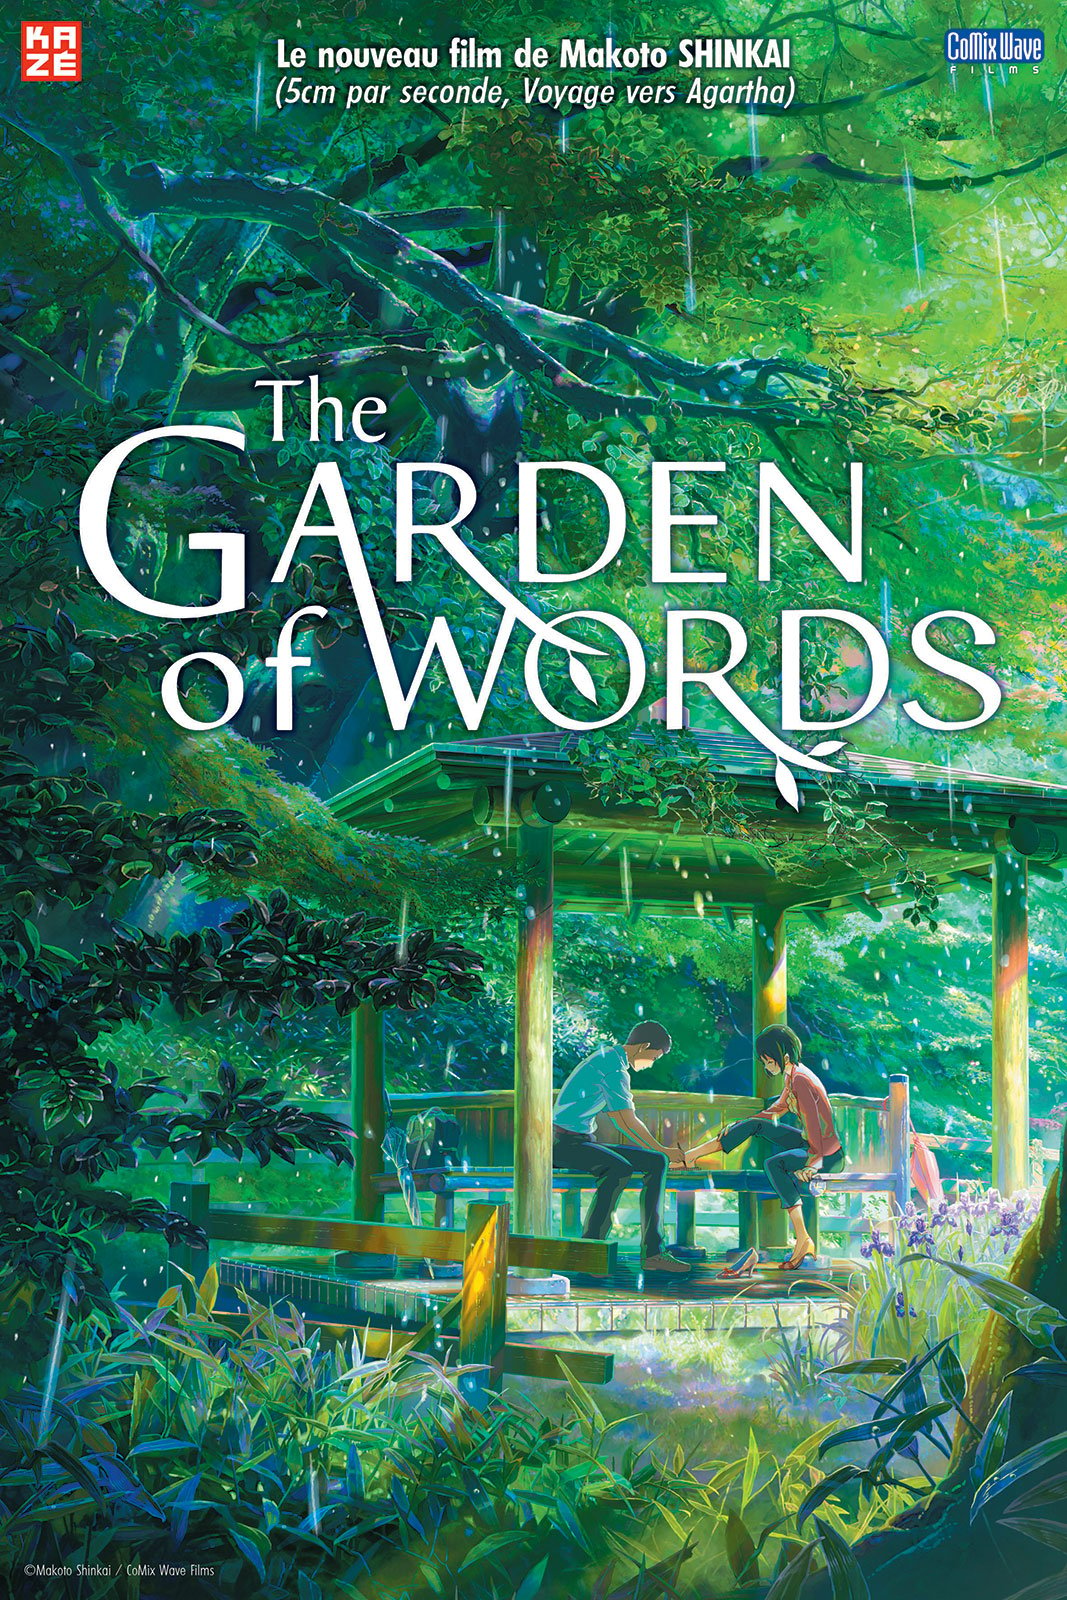 The Garden of Words - Court Métrage - AlloCiné